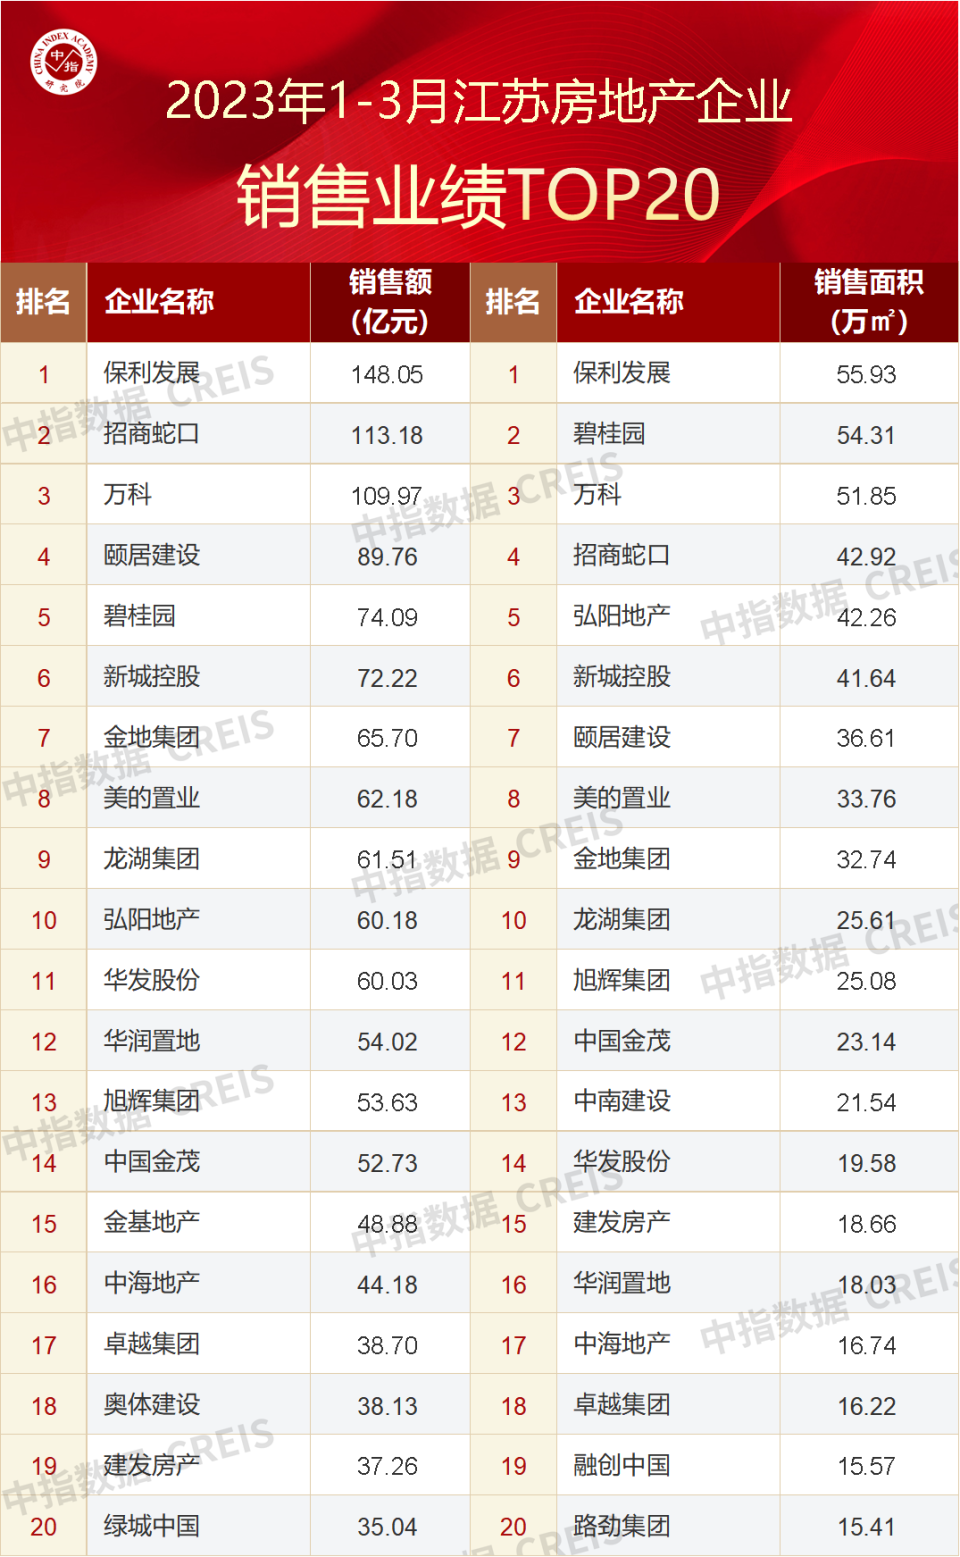 2023年1-3月江苏省房地产企业销售业绩TOP20